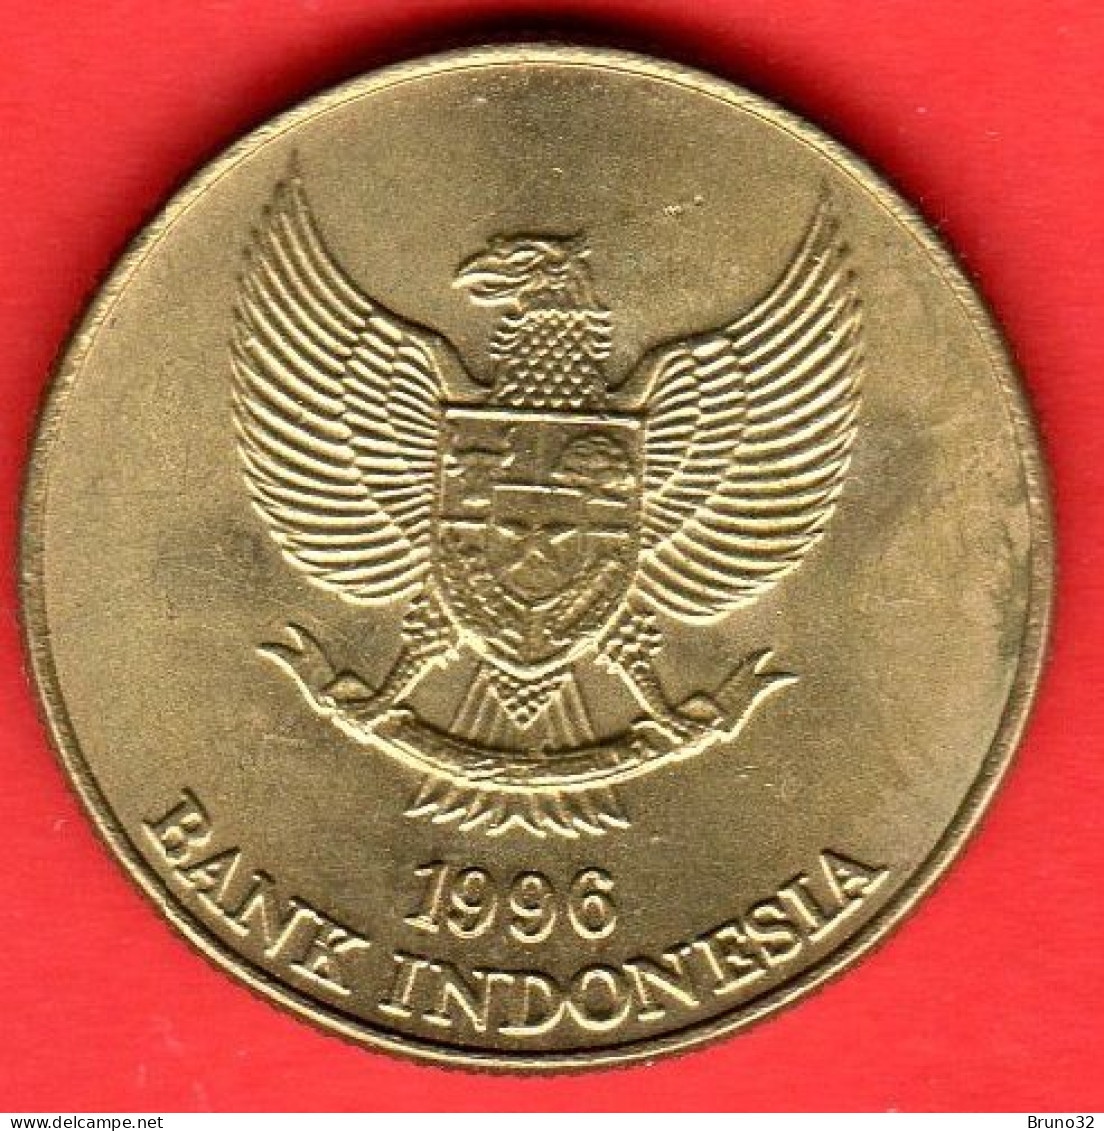 Indonesia - 1996 - 50 Rupiah - Dragon - QFDC/aUNC - Come Da Foto - Indonésie